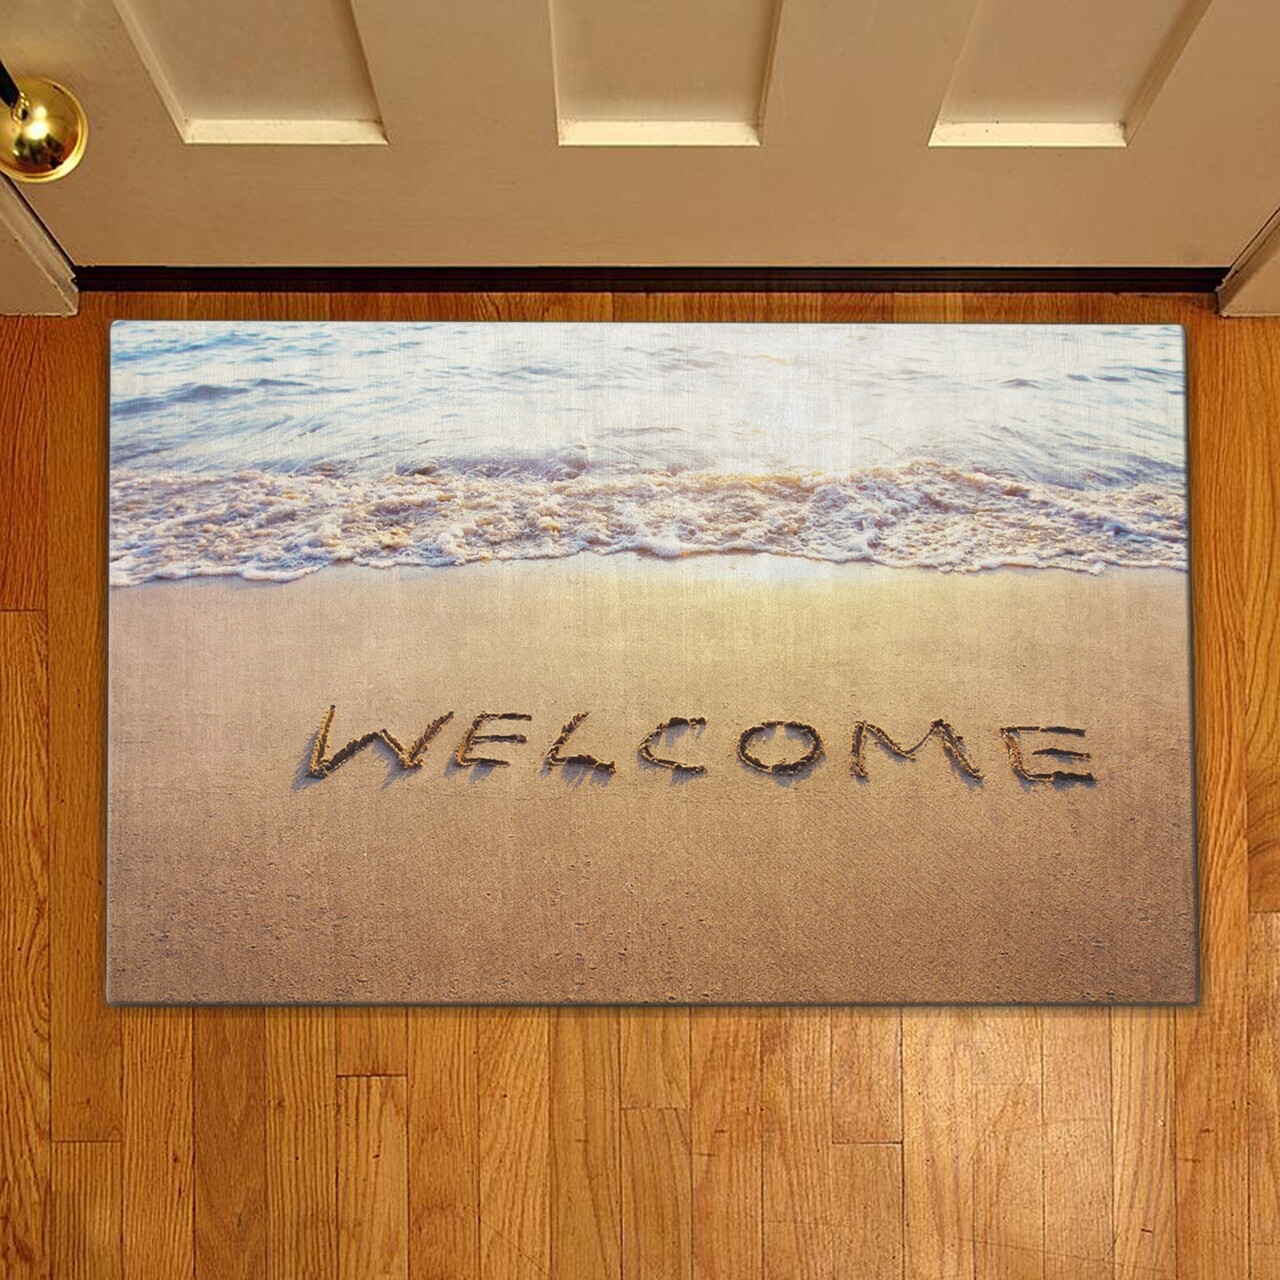 Bejárati szőnyeg Üdvözöljük a homoknál, Casberg, 38x58 cm, poliészter, tarka